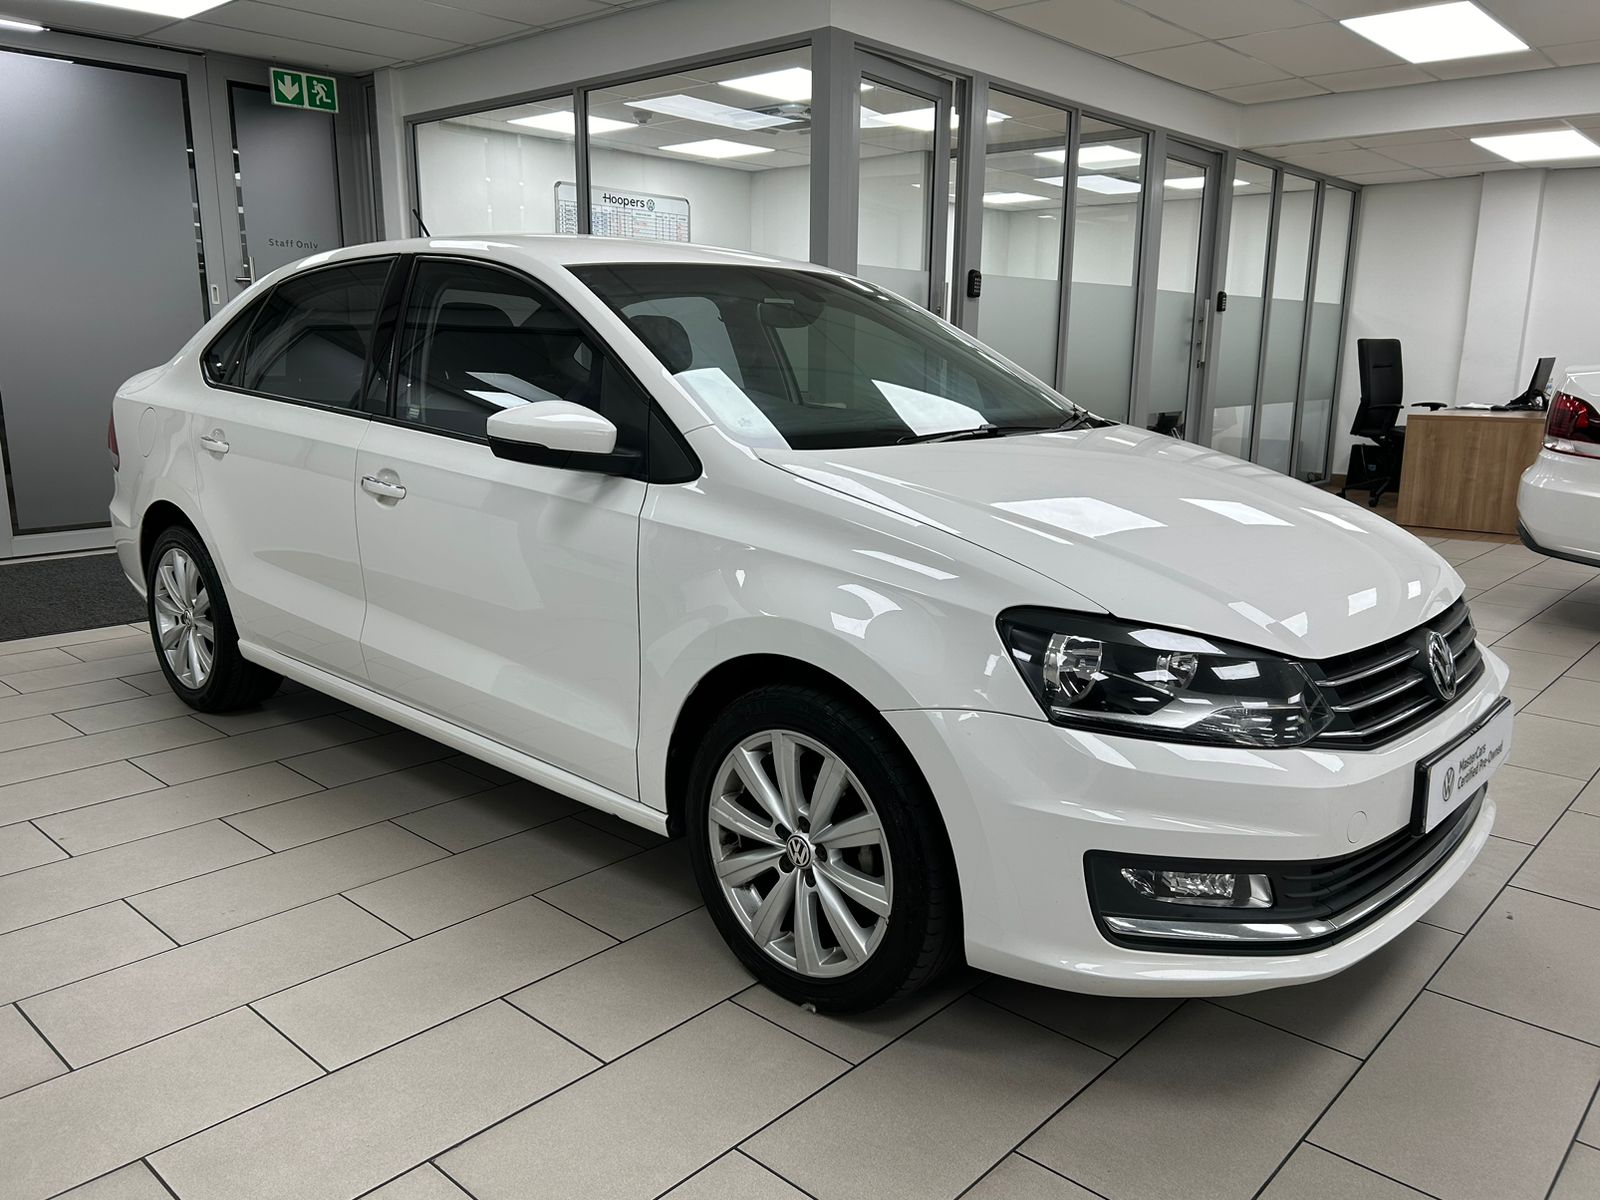 2019 Volkswagen Polo Sedan  for sale - 01HVUVW076020